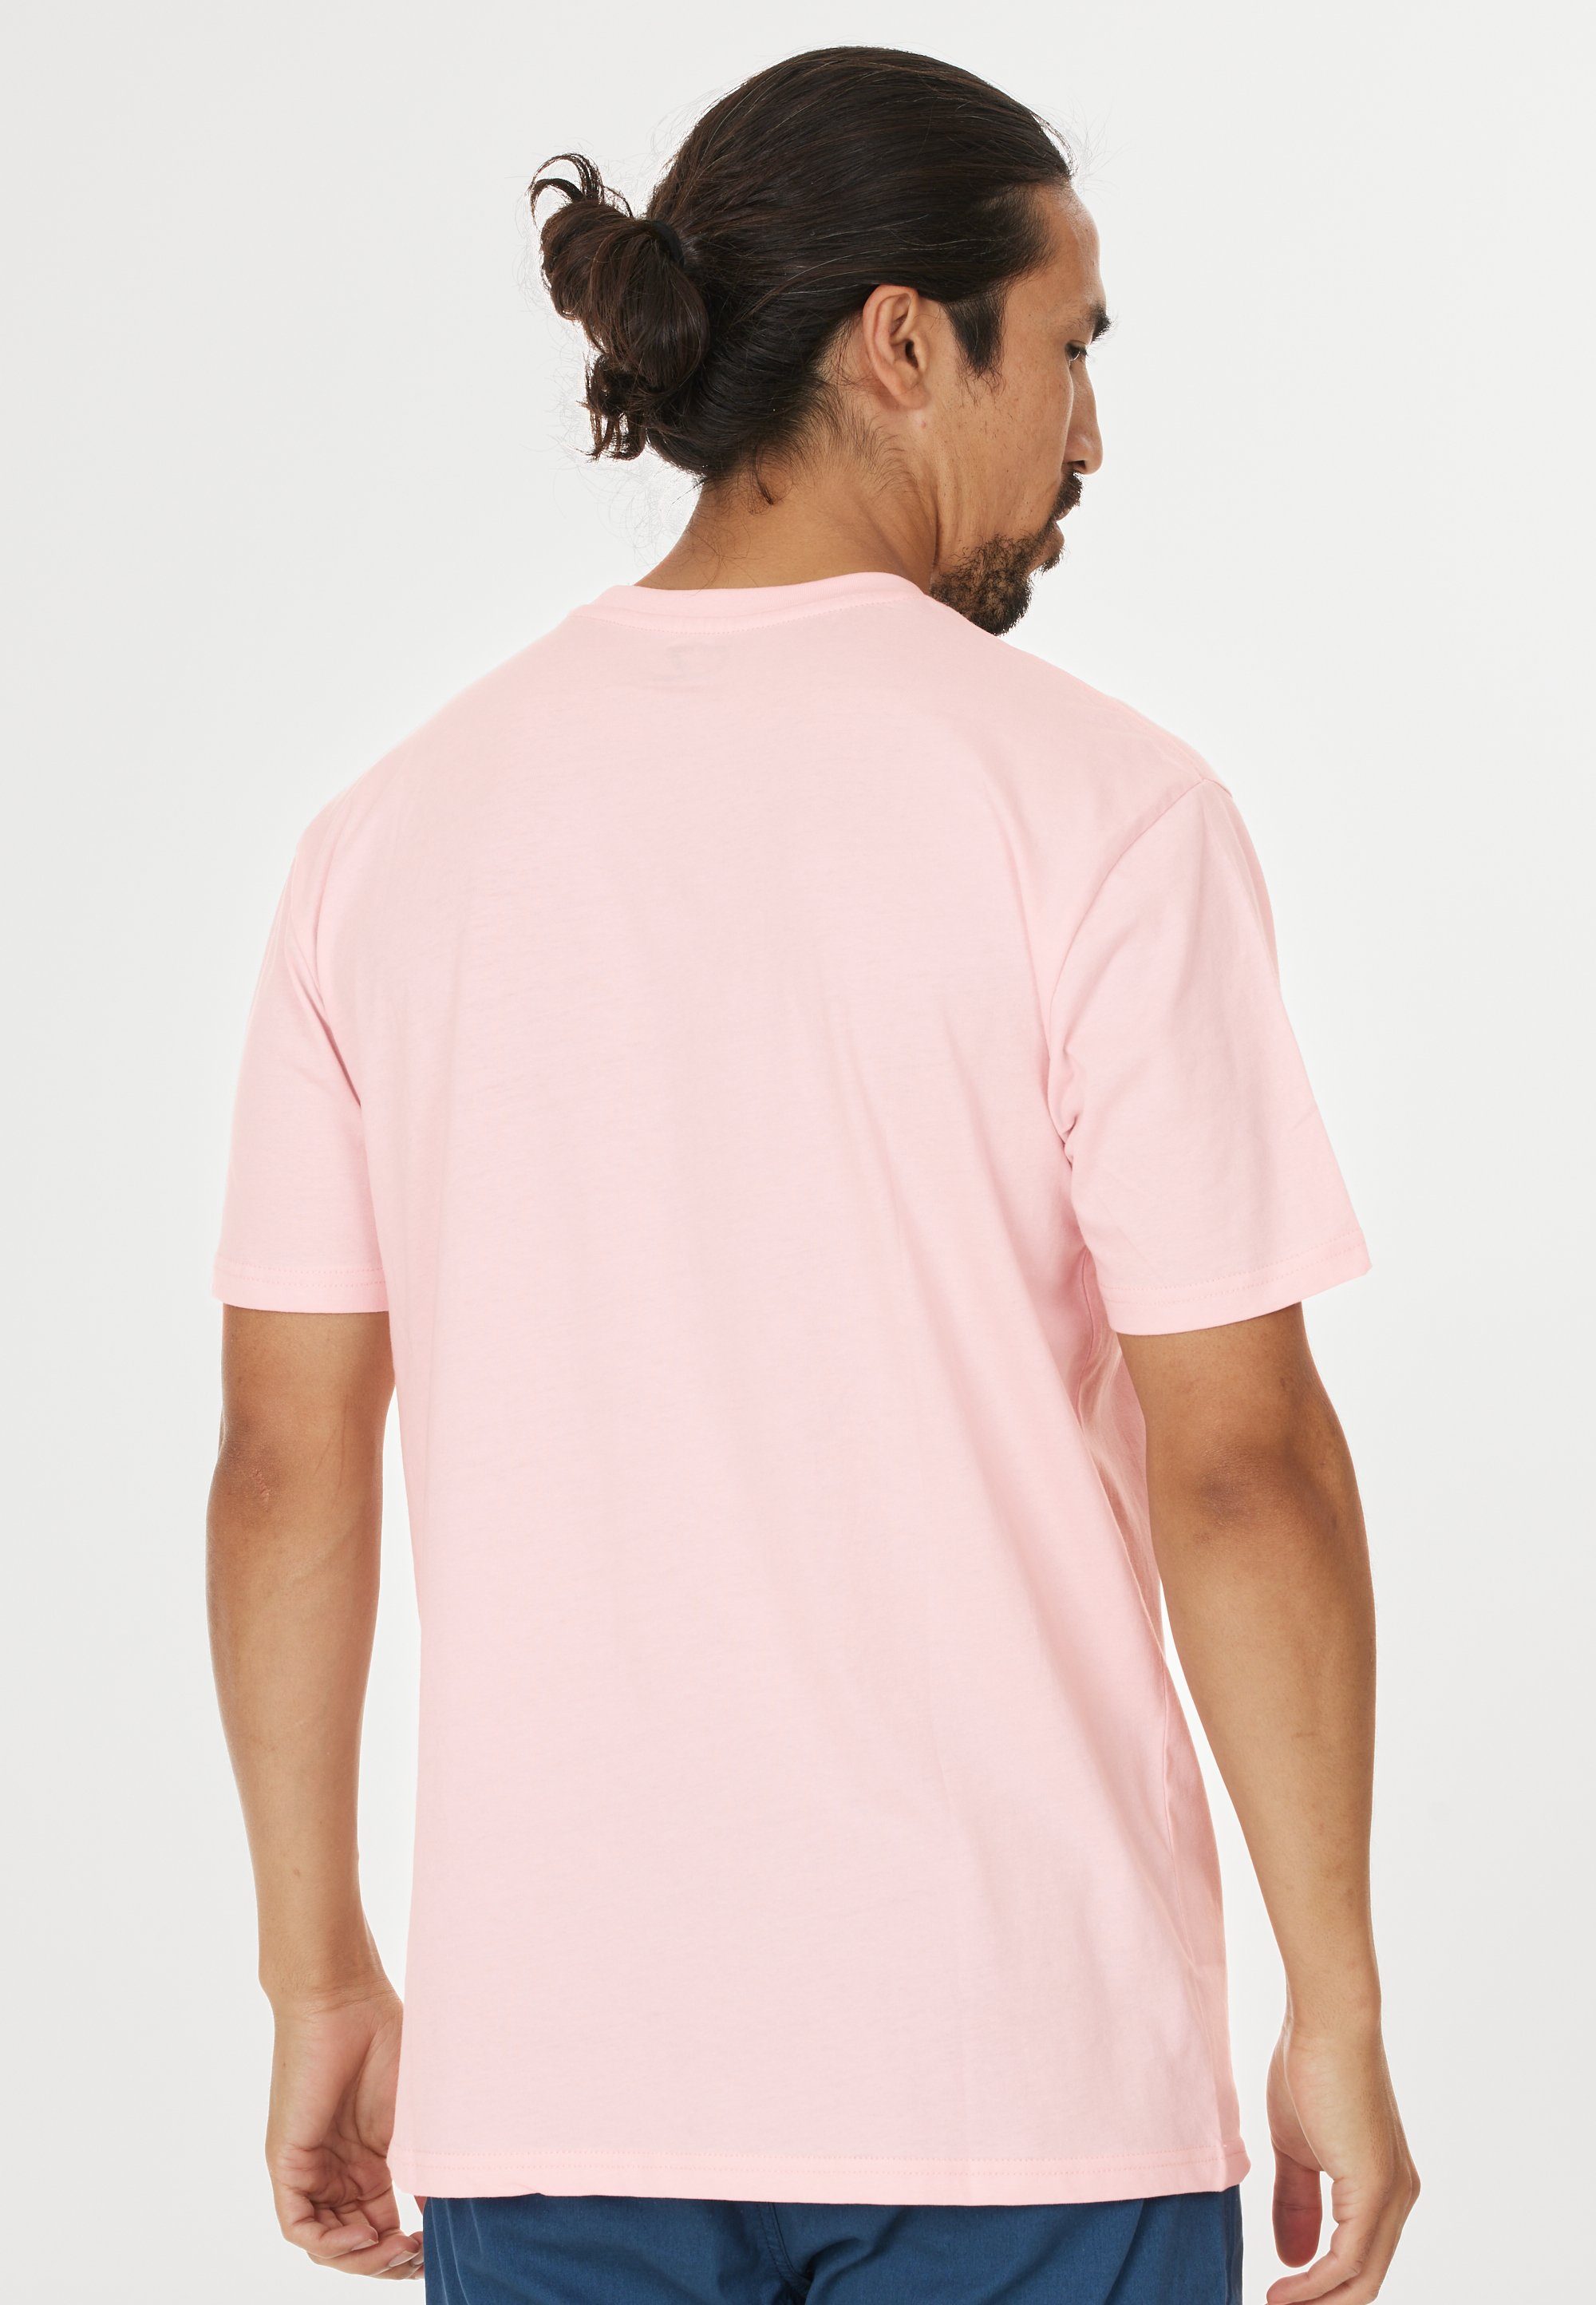 Highmore rosa aus CRUZ T-Shirt Baumwolle reiner